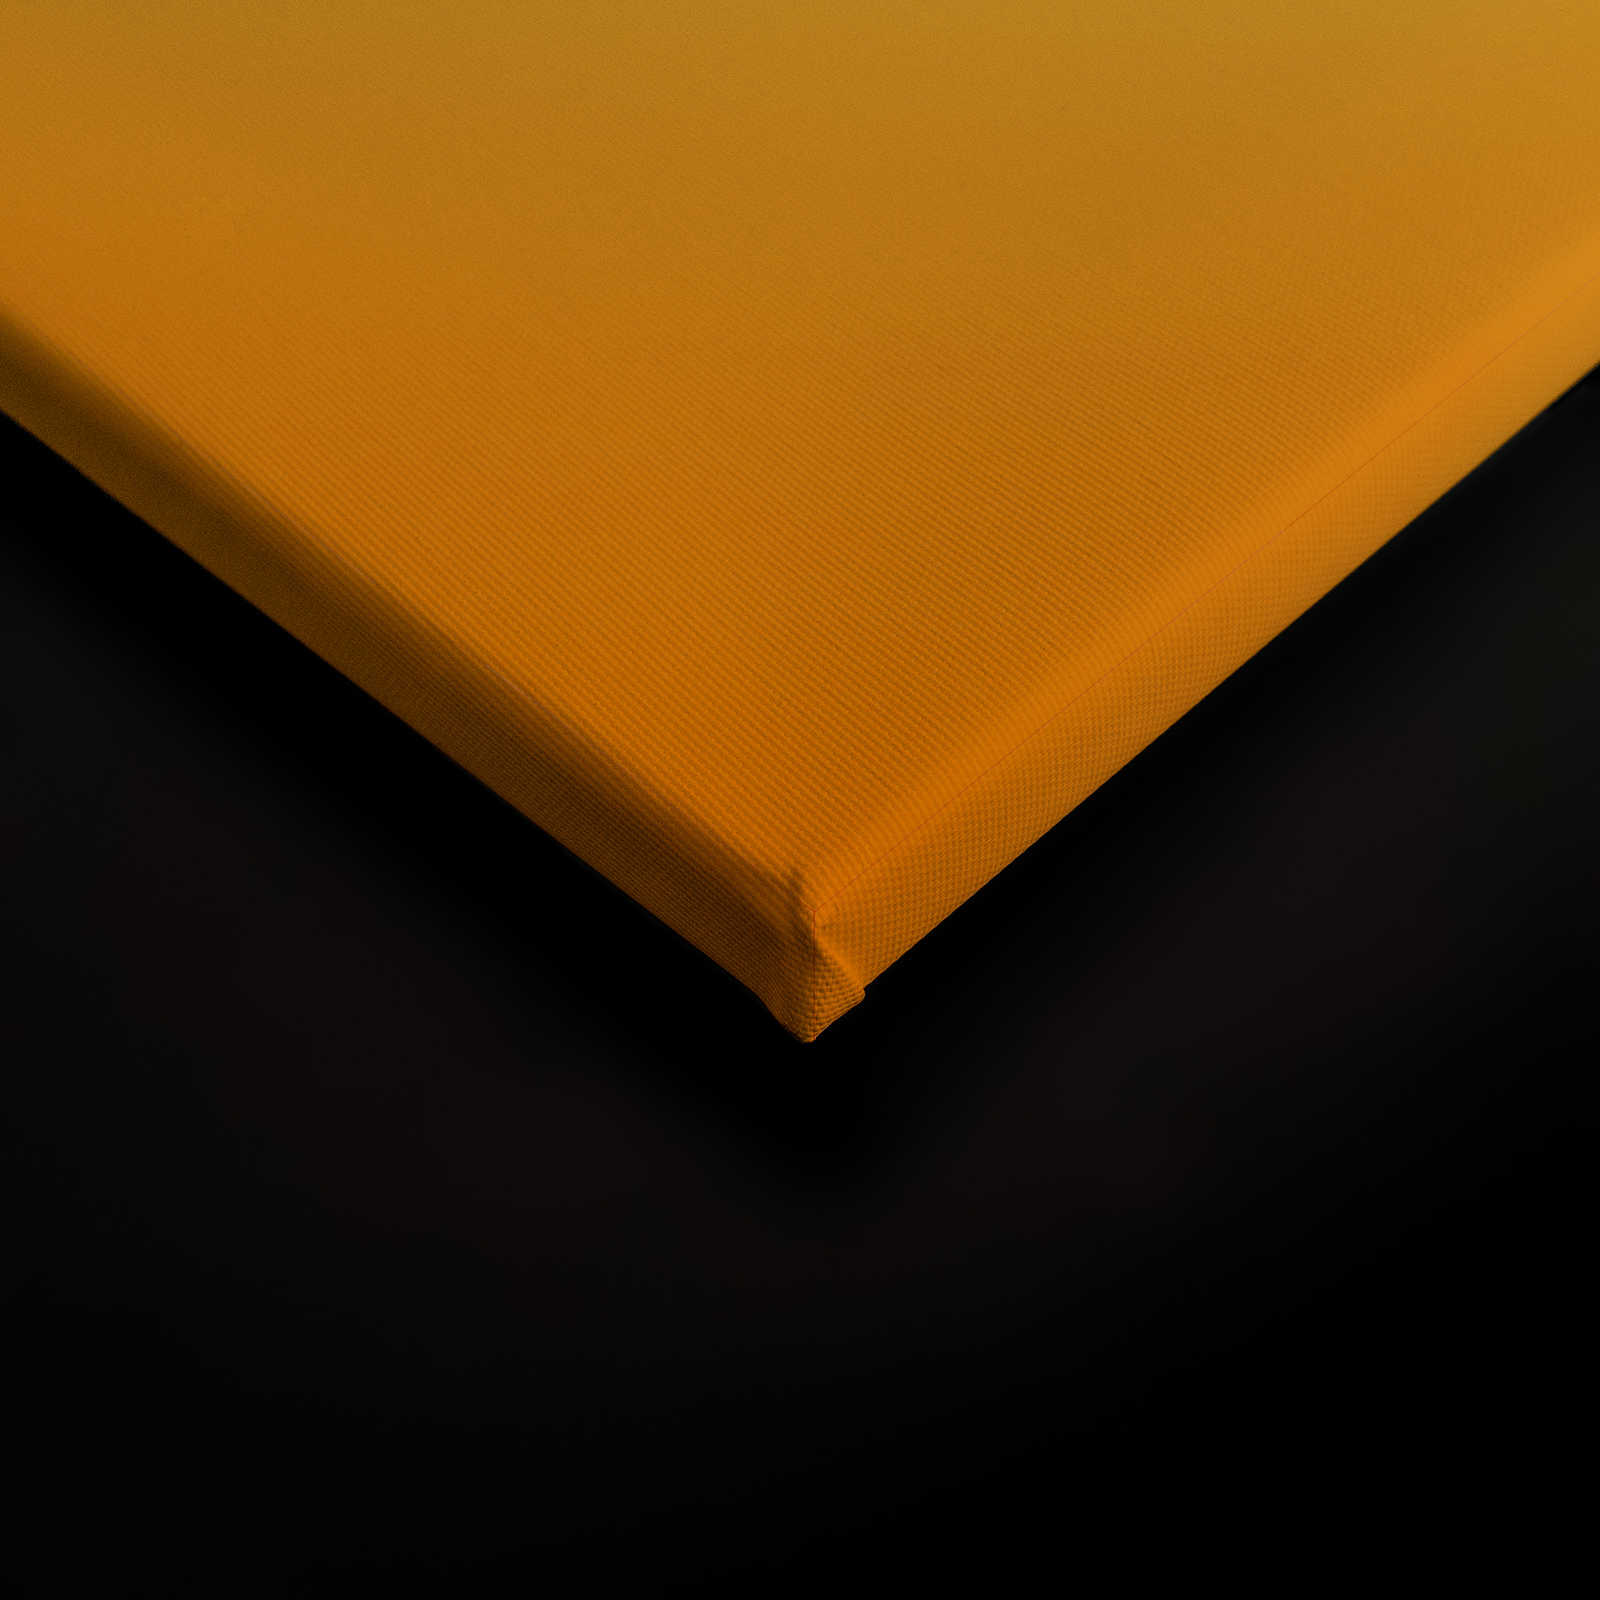             Lienzo con motivo abstracto de colores - 0,90 m x 0,60 m
        